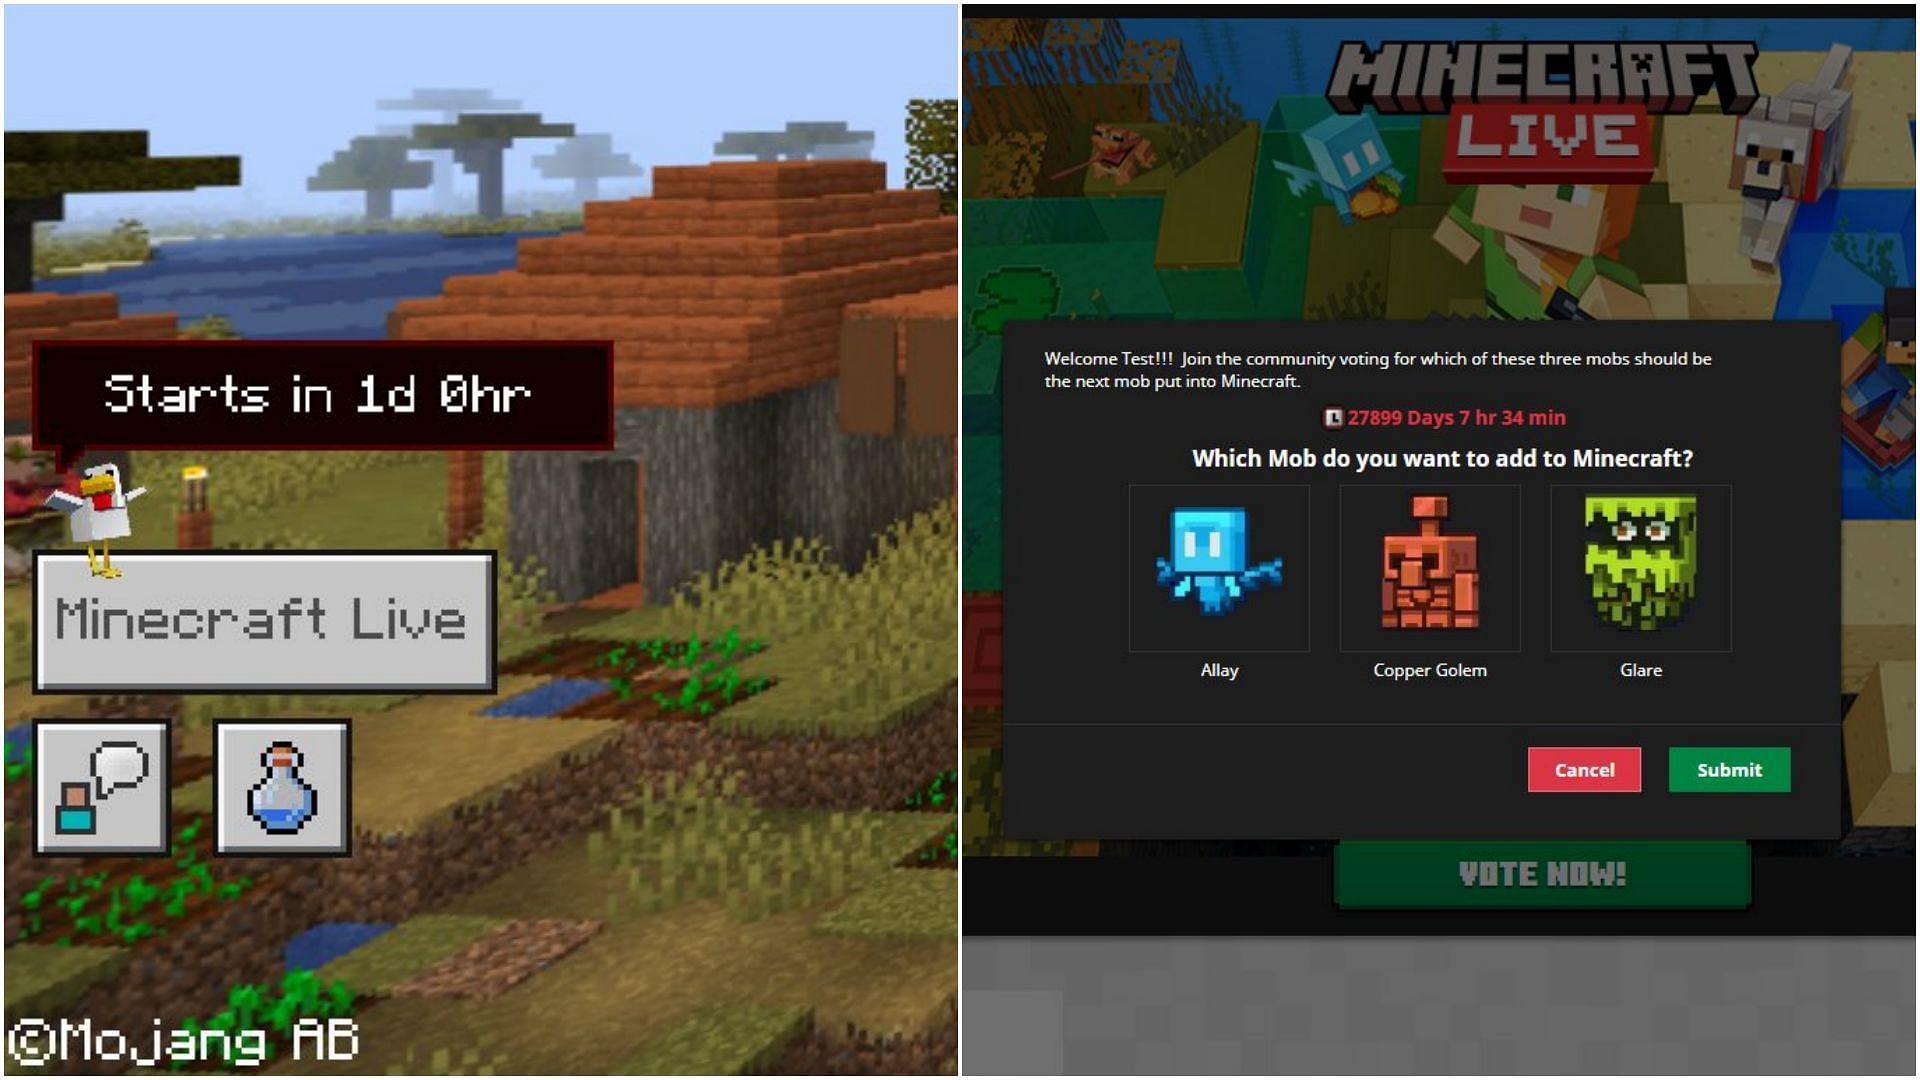 Minecraft Live pode trazer novos mobs Glare, Allay e mais; o que